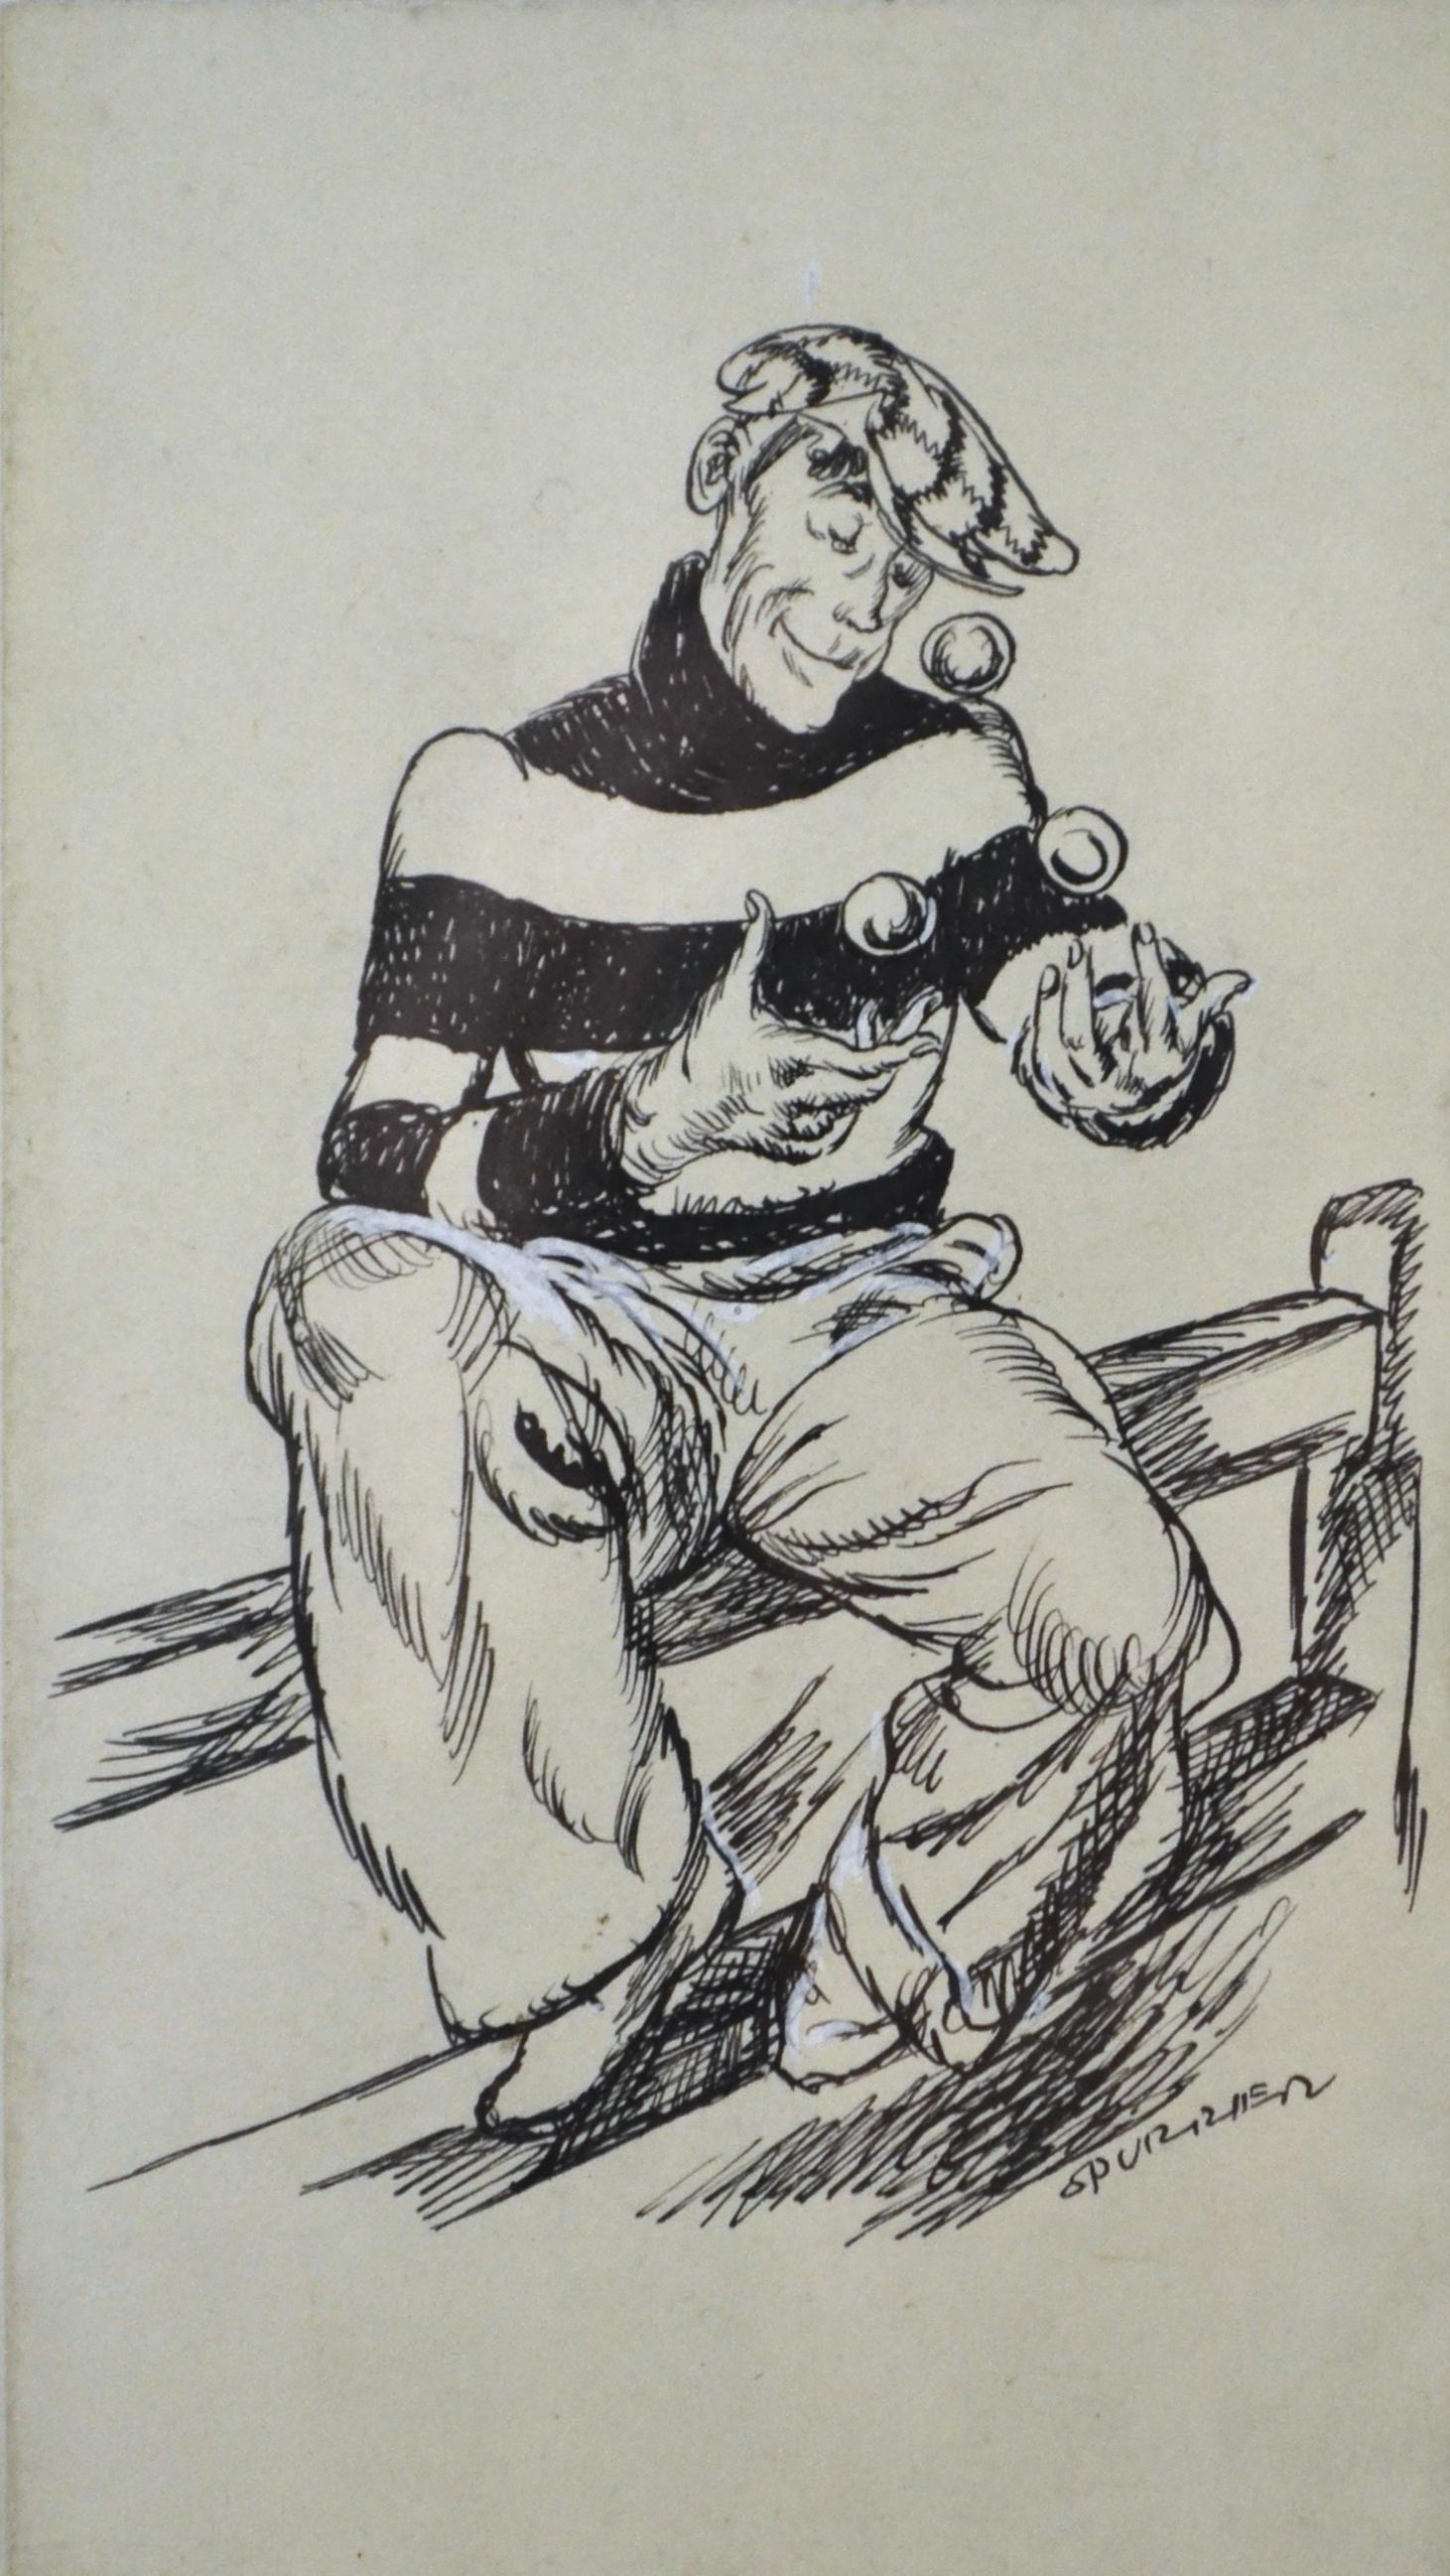 Charlie Chaffinch - Original 1930s illustration by Steven Spurrier